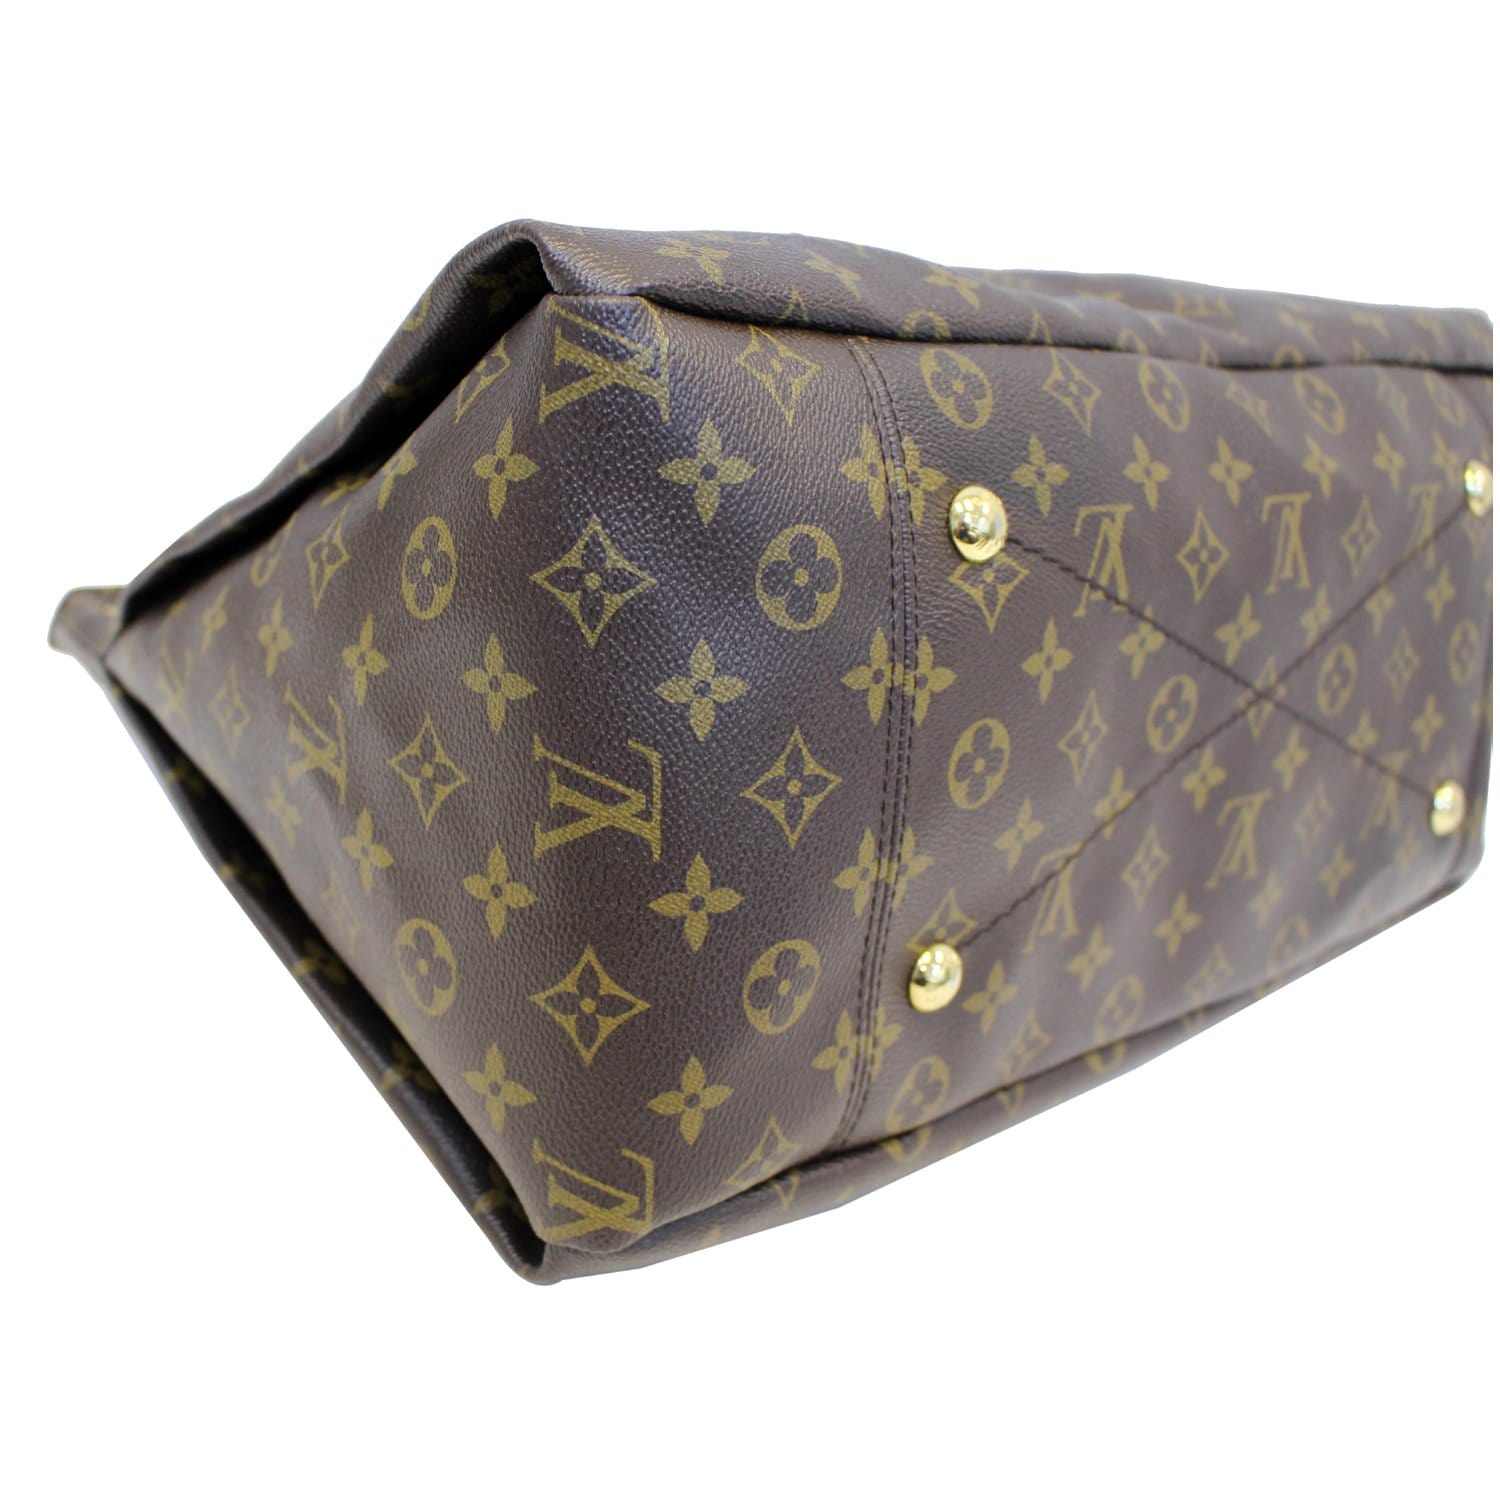 Louis Vuitton Artsy MM Monogram Shoulder Bag - Lv Artsy